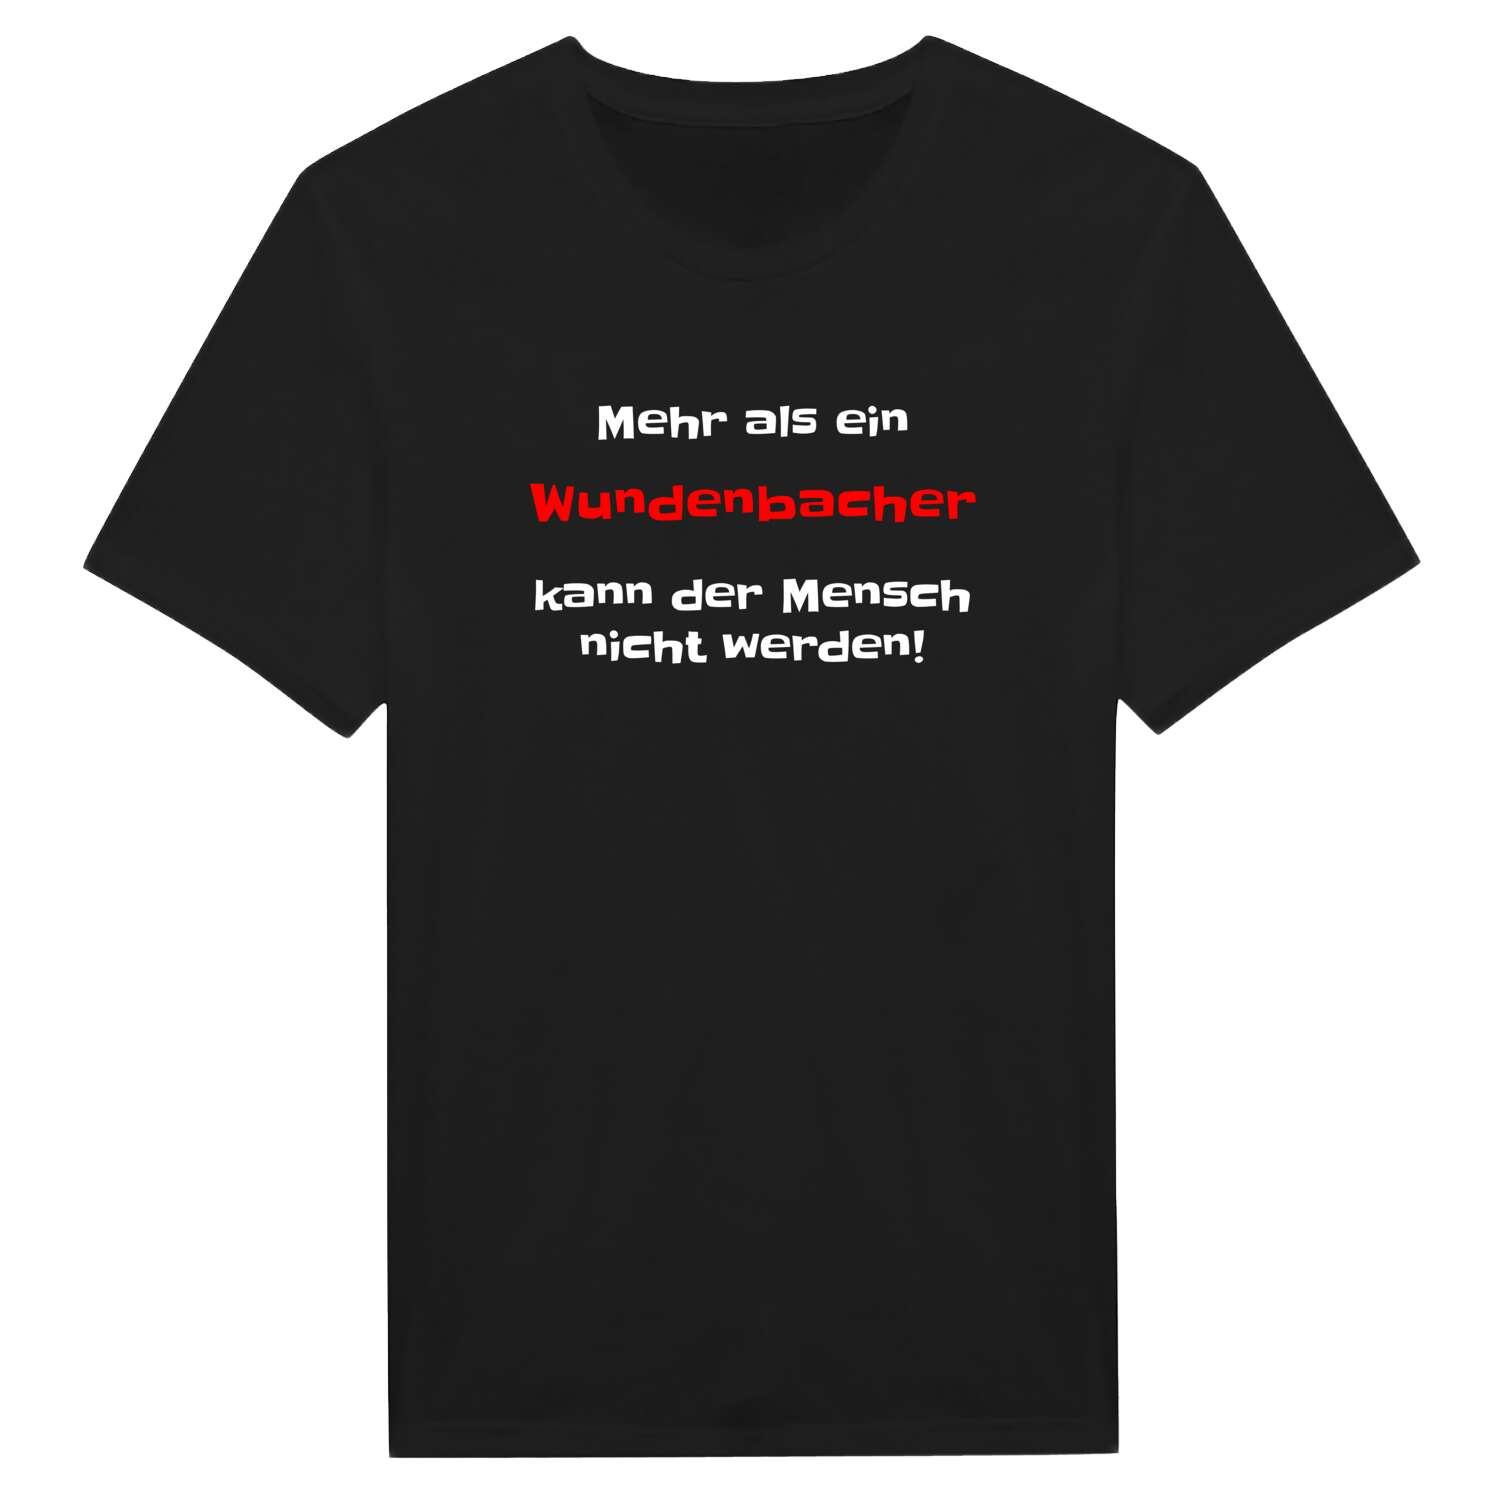 Wundenbach T-Shirt »Mehr als ein«